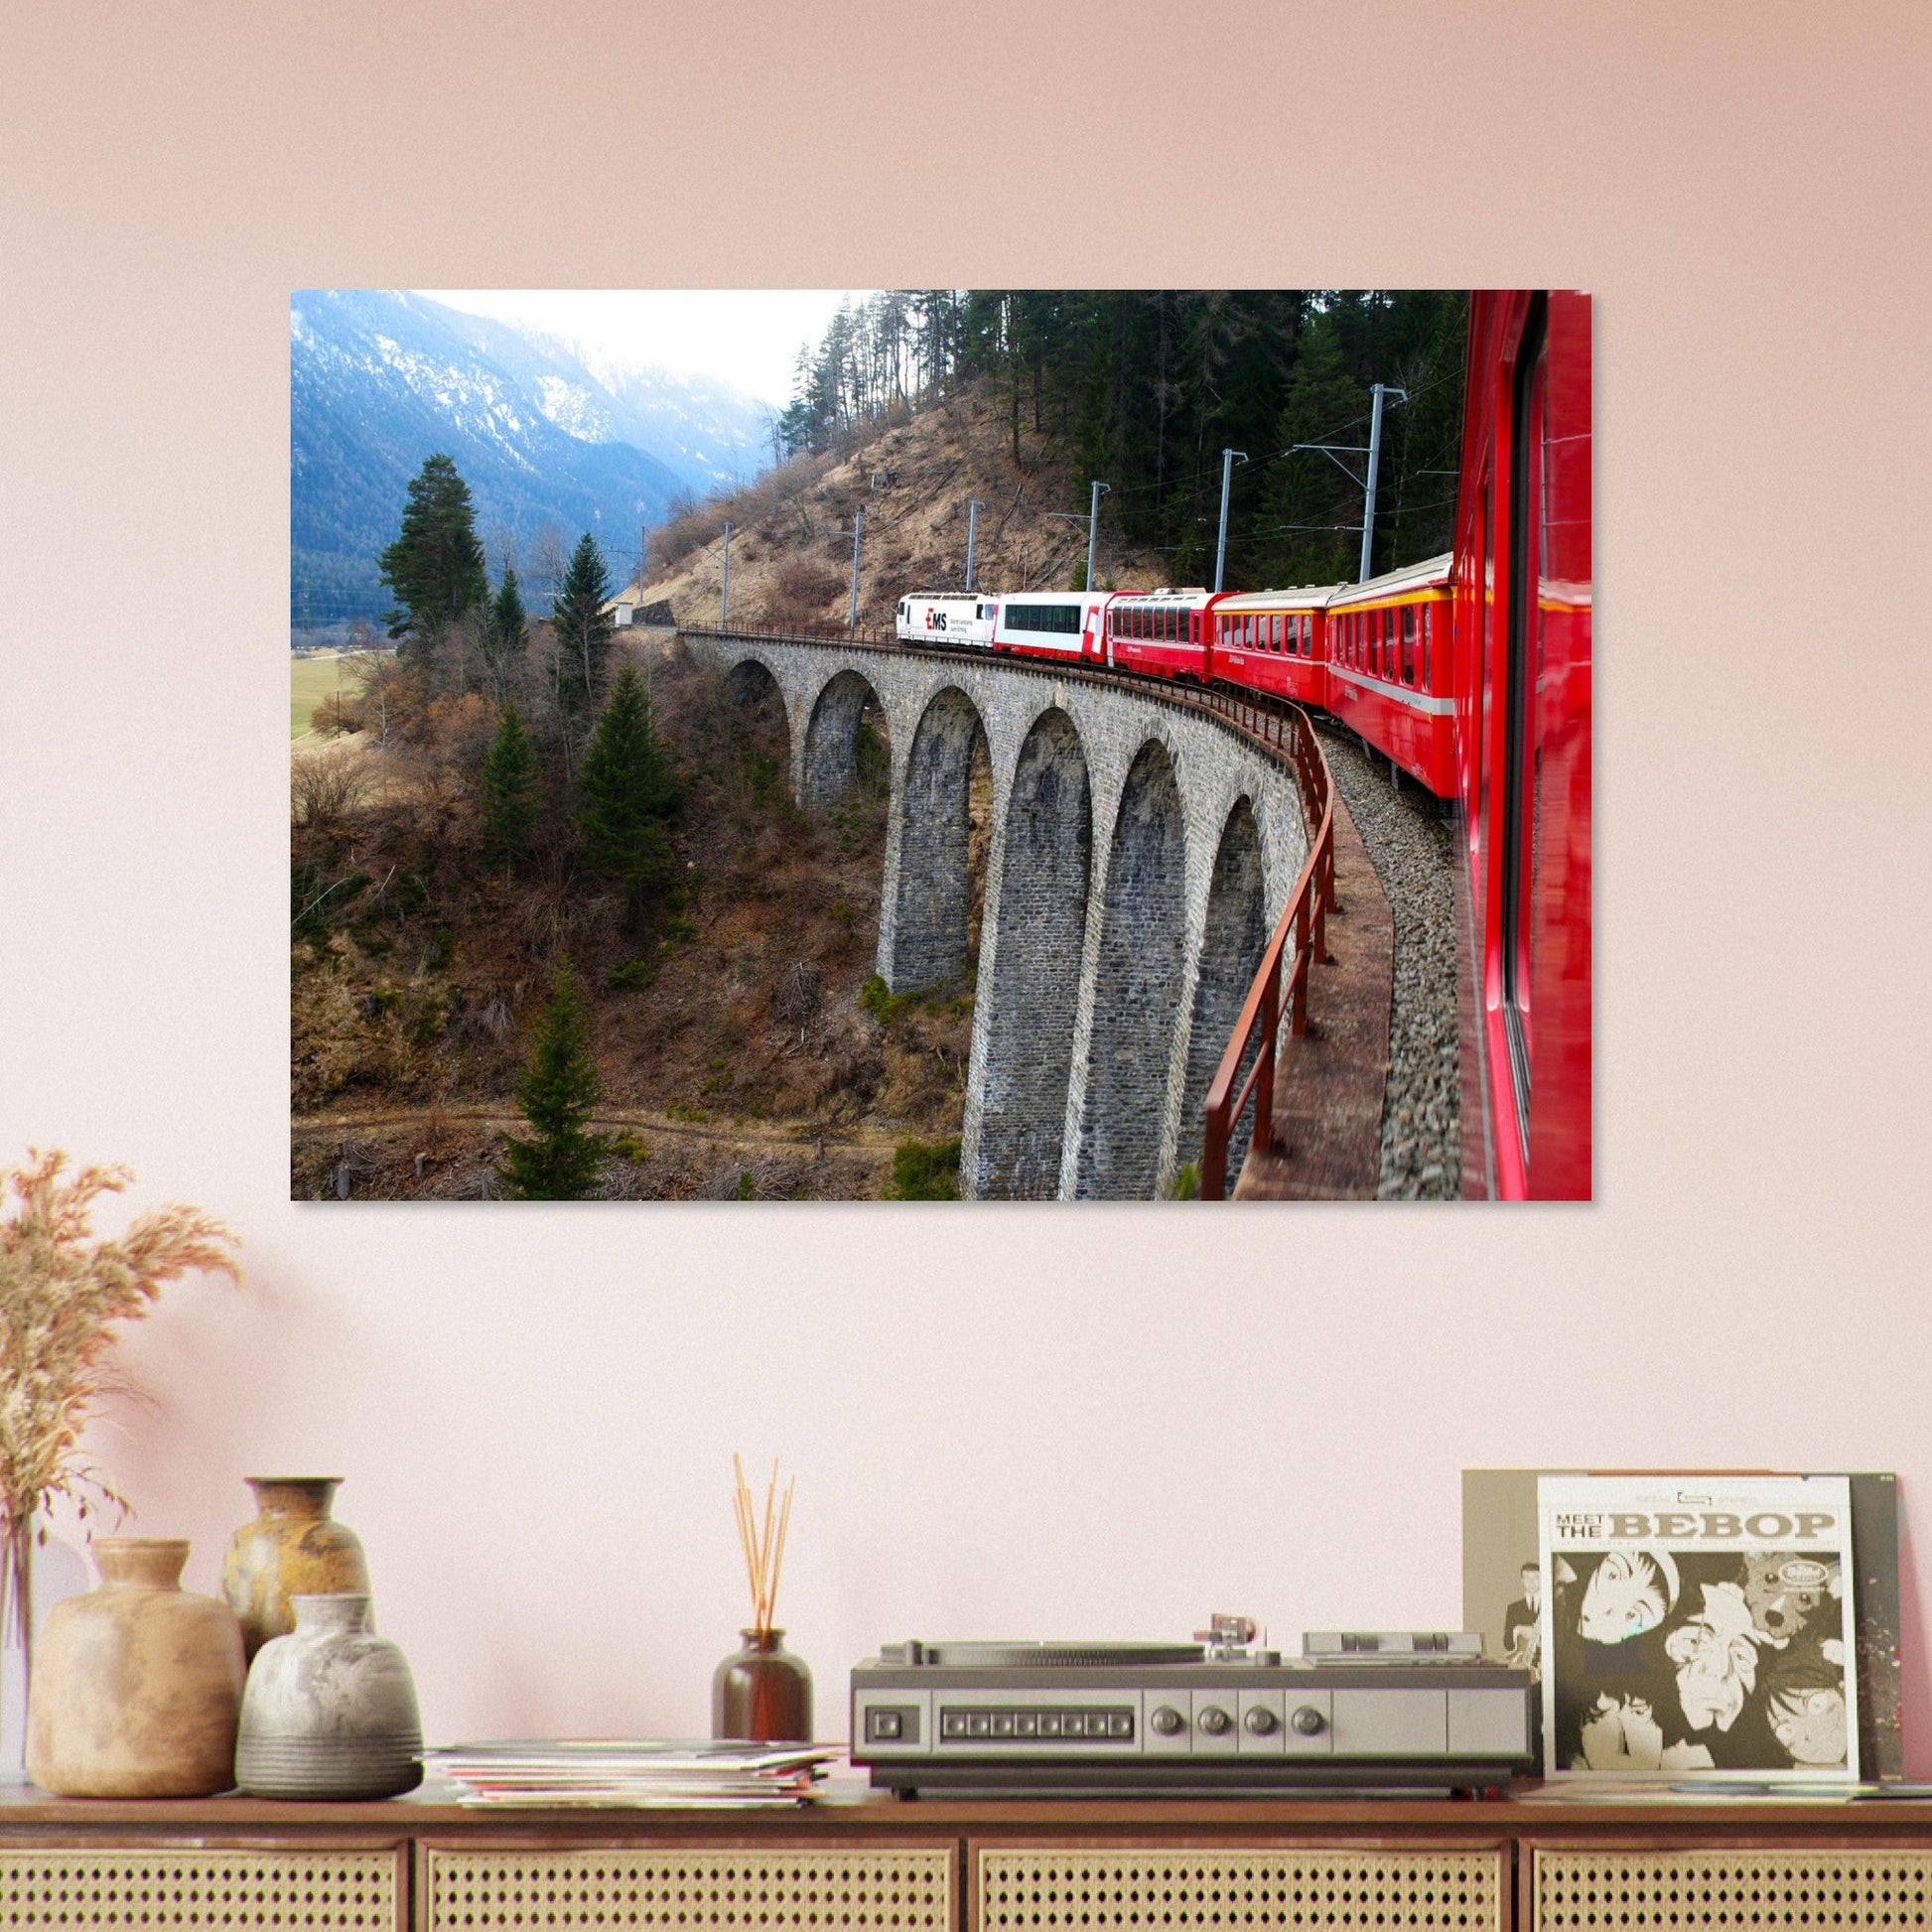 Vente Photo d'un train sur le Viaduc de Landwasser, Suisse #6 - Tableau photo paysage